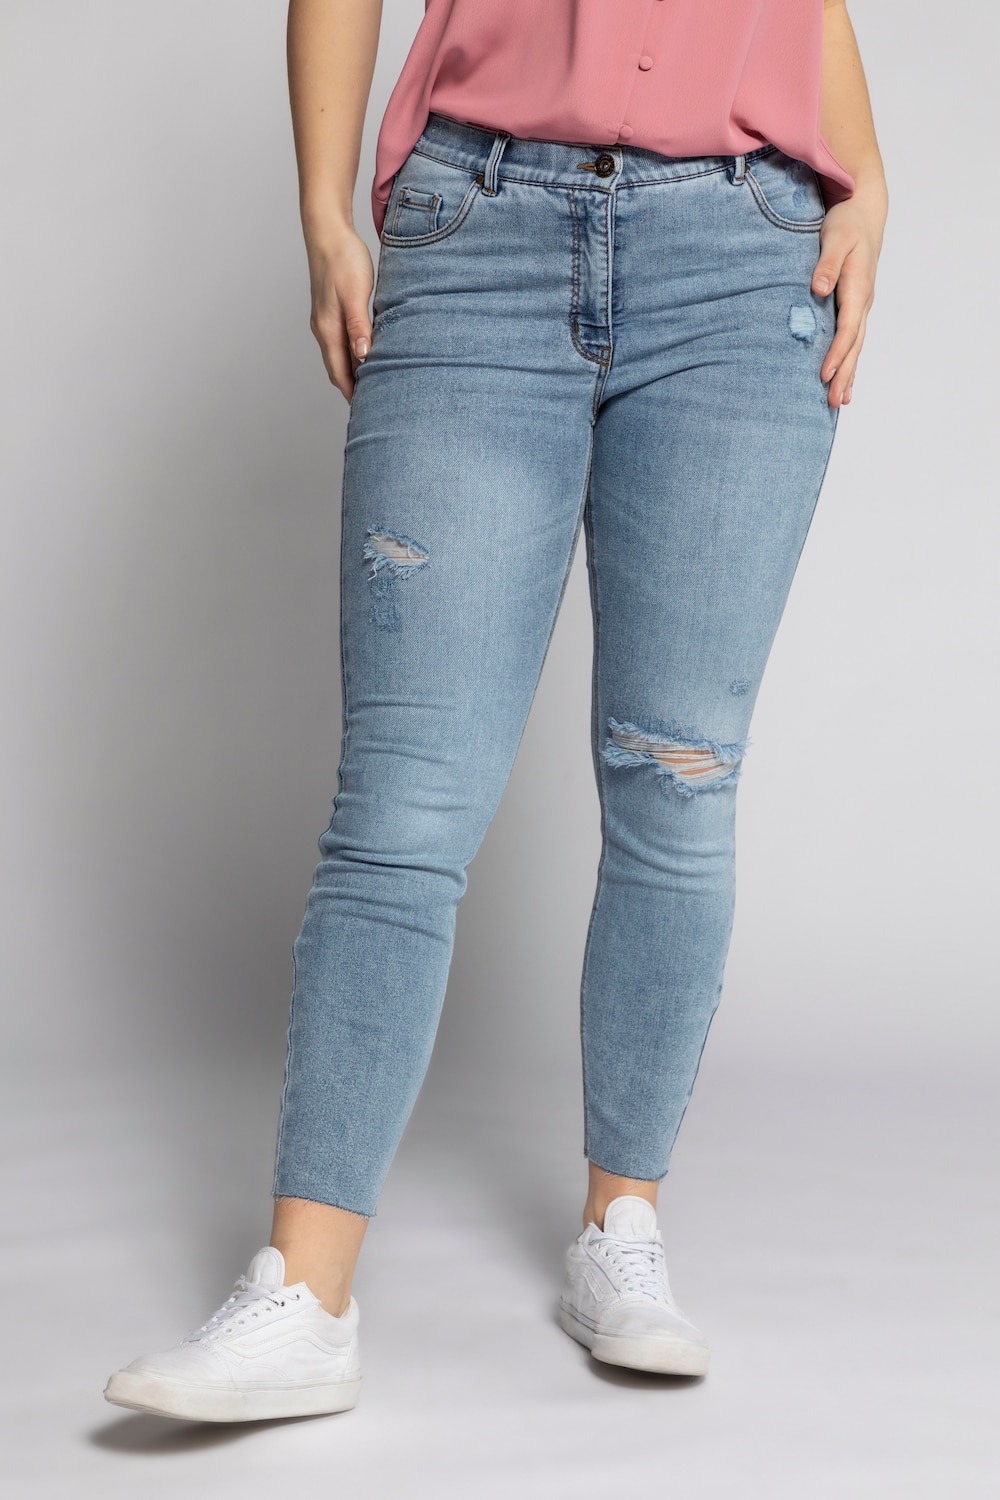 Grote Maten skinny jeans, Dames, paars, Maat: 58, Katoen/Polyester, Studio Untold